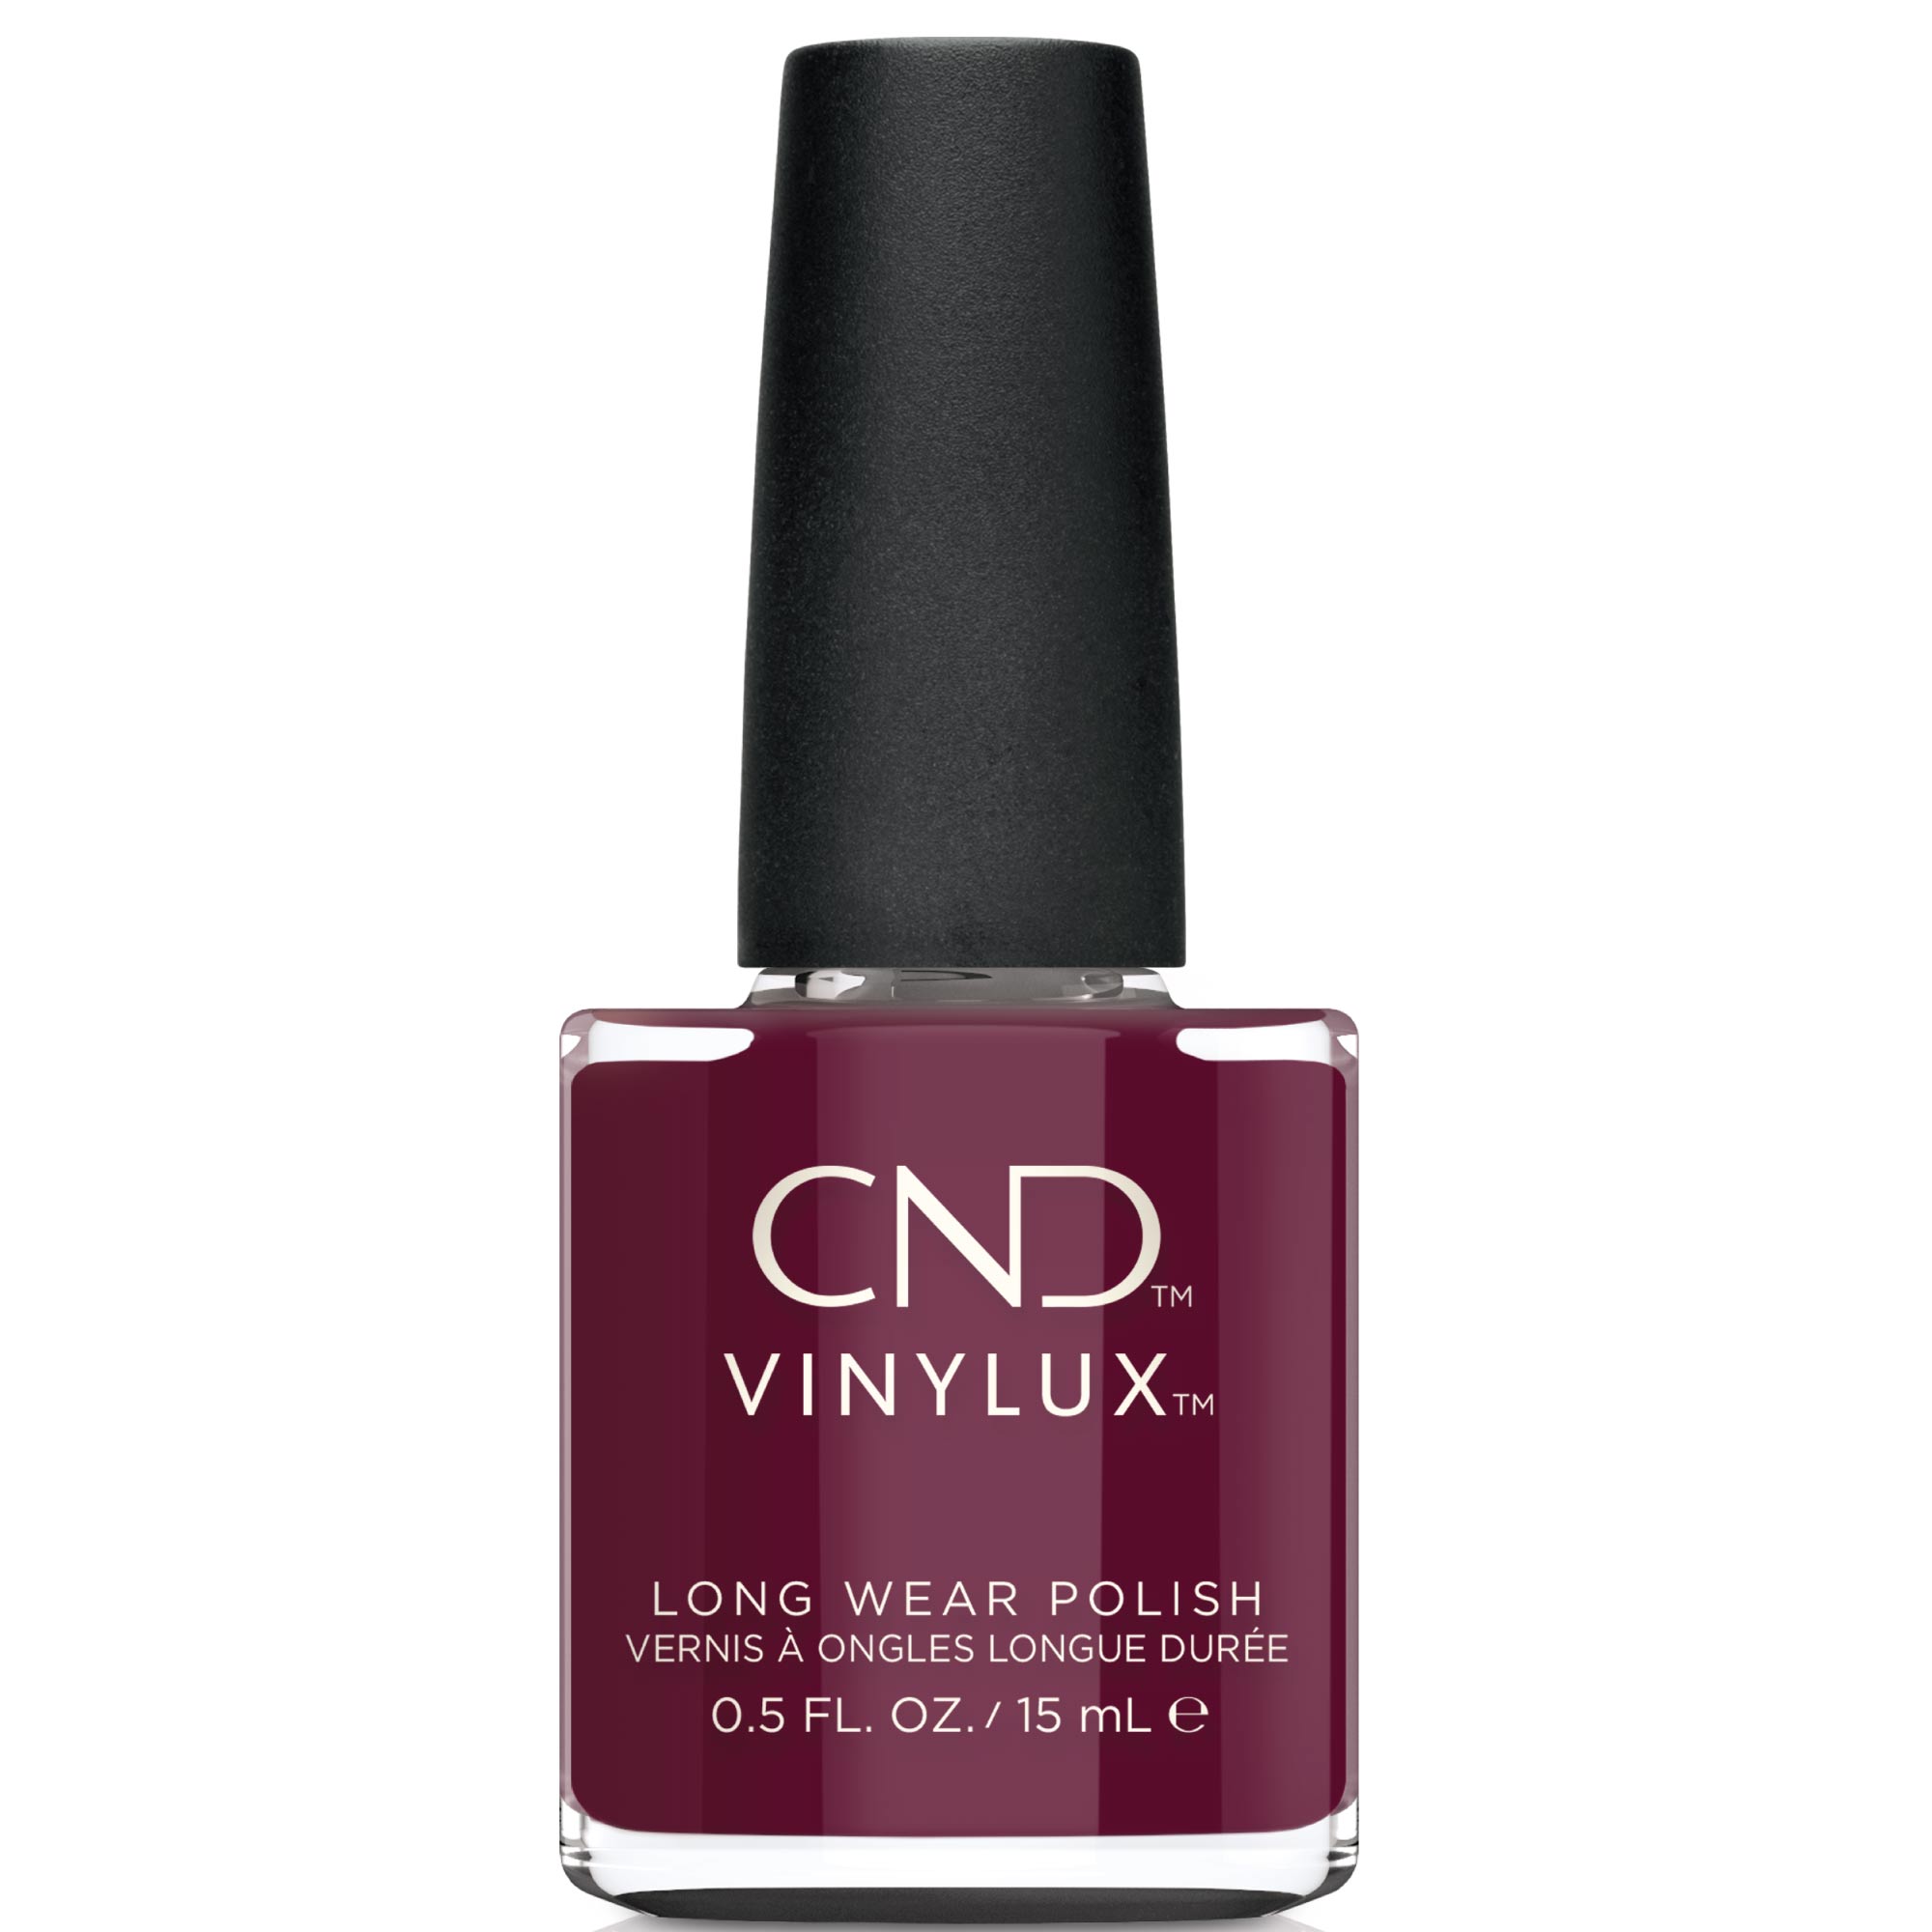 CND Signature Lipstick #390 VINYLUX, 15 ml